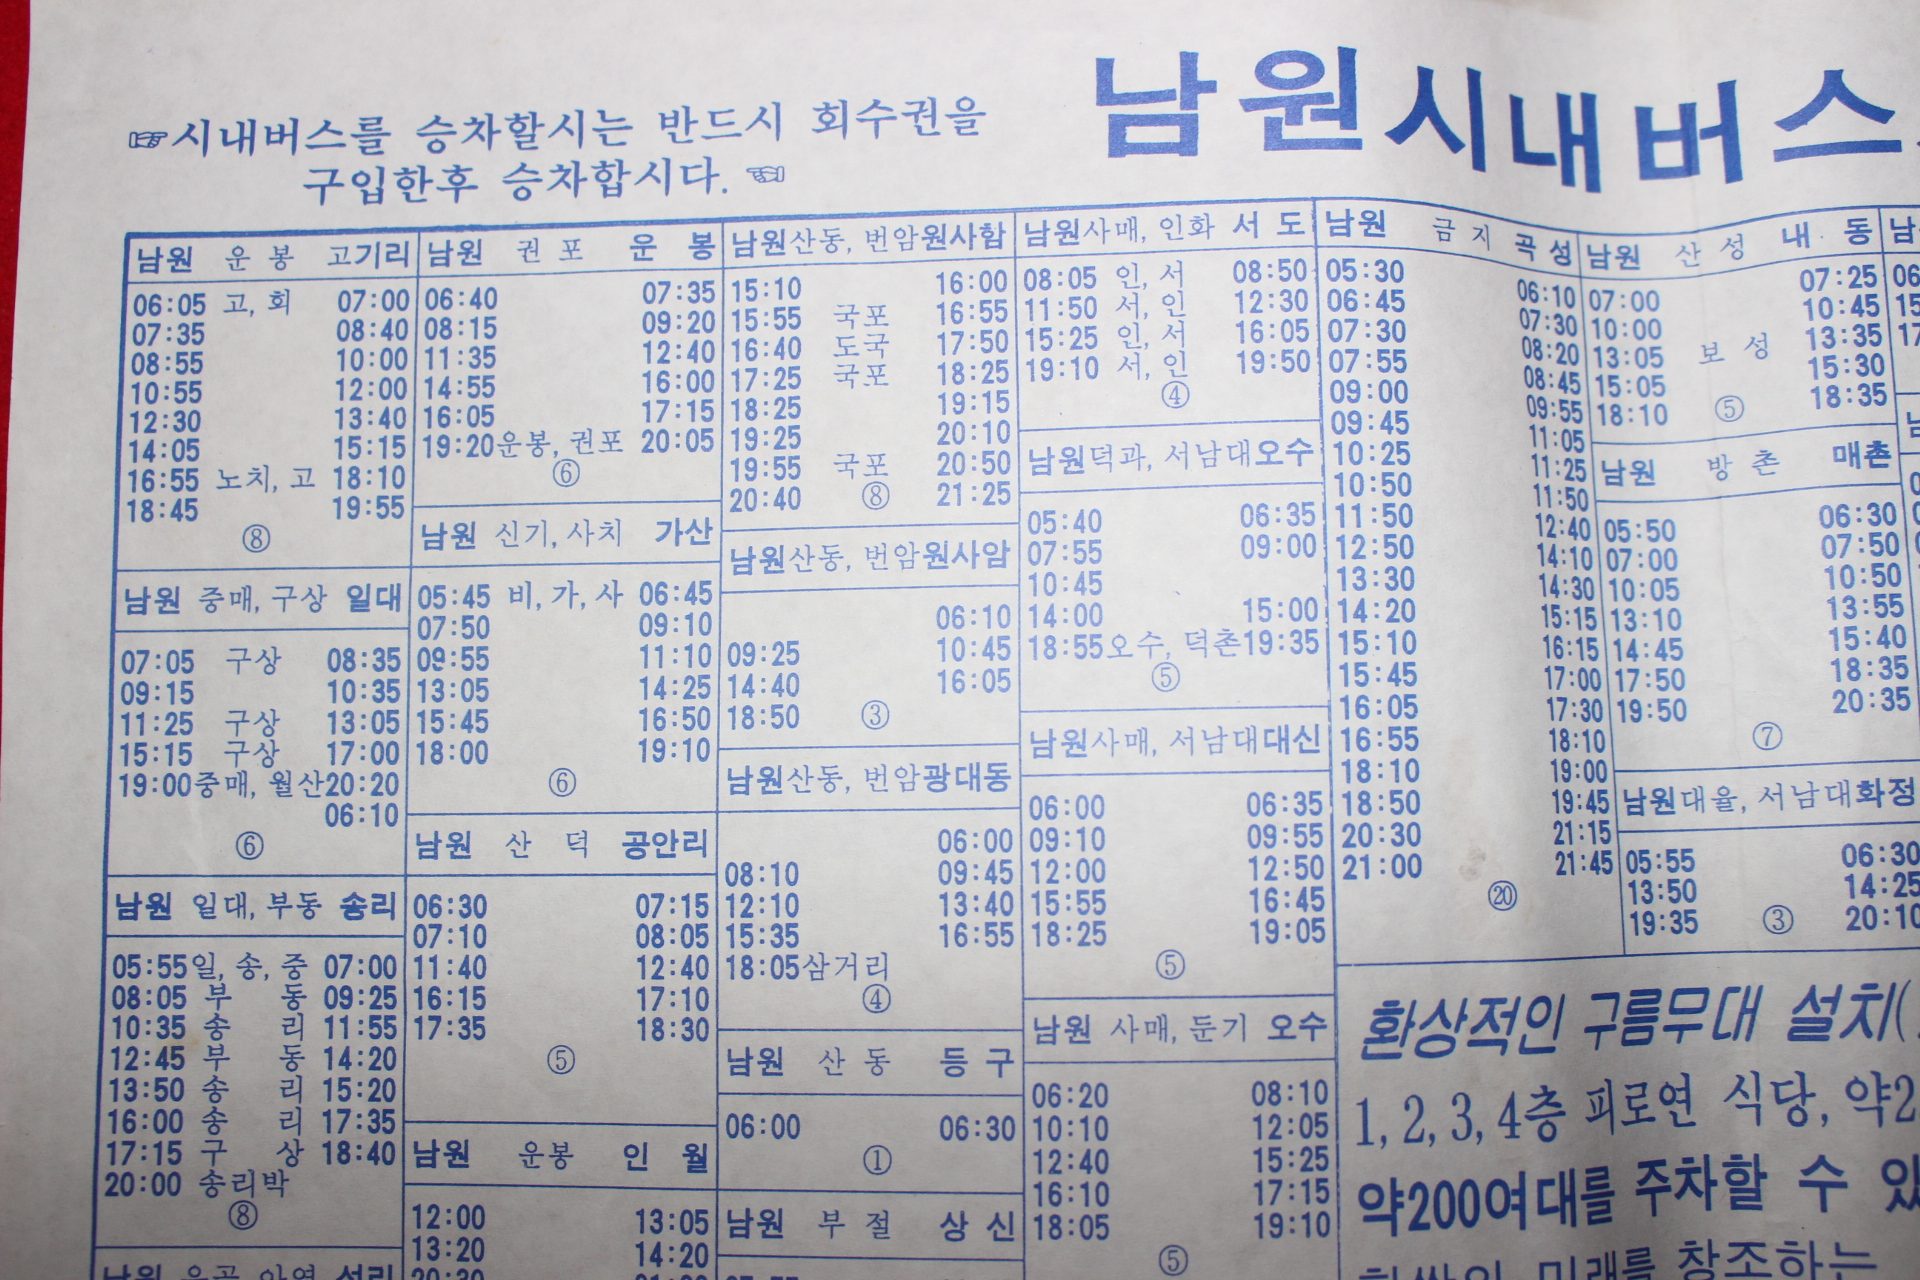 1994년 남원 시내버스시간표